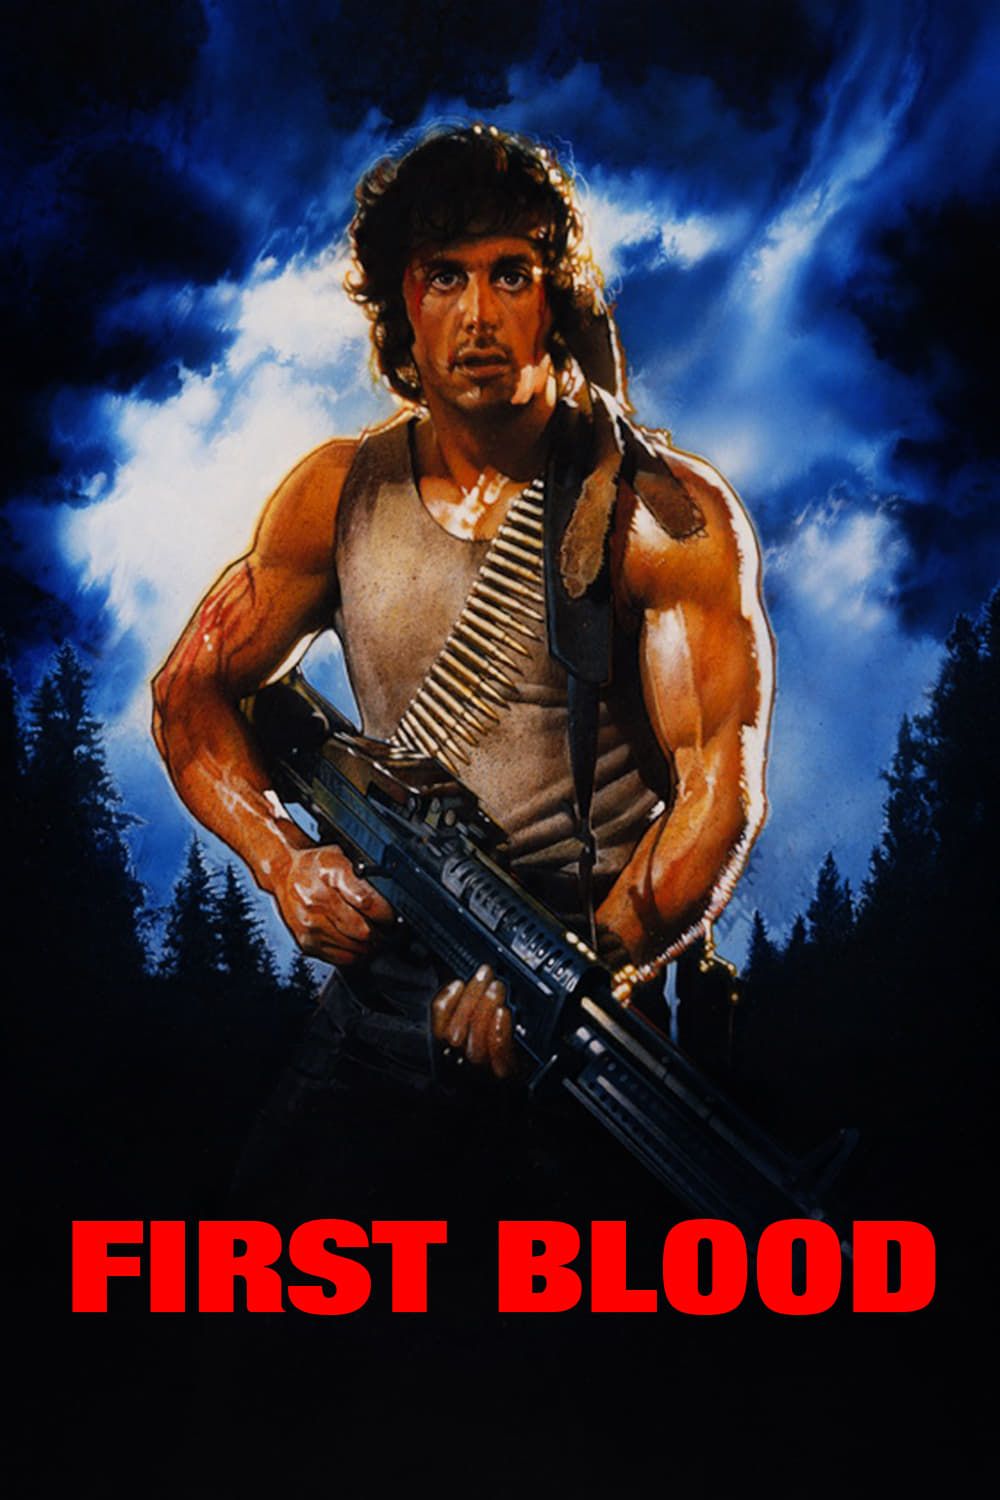 Stallone explode todo mundo em novo trailer de 'Rambo 5'; filme